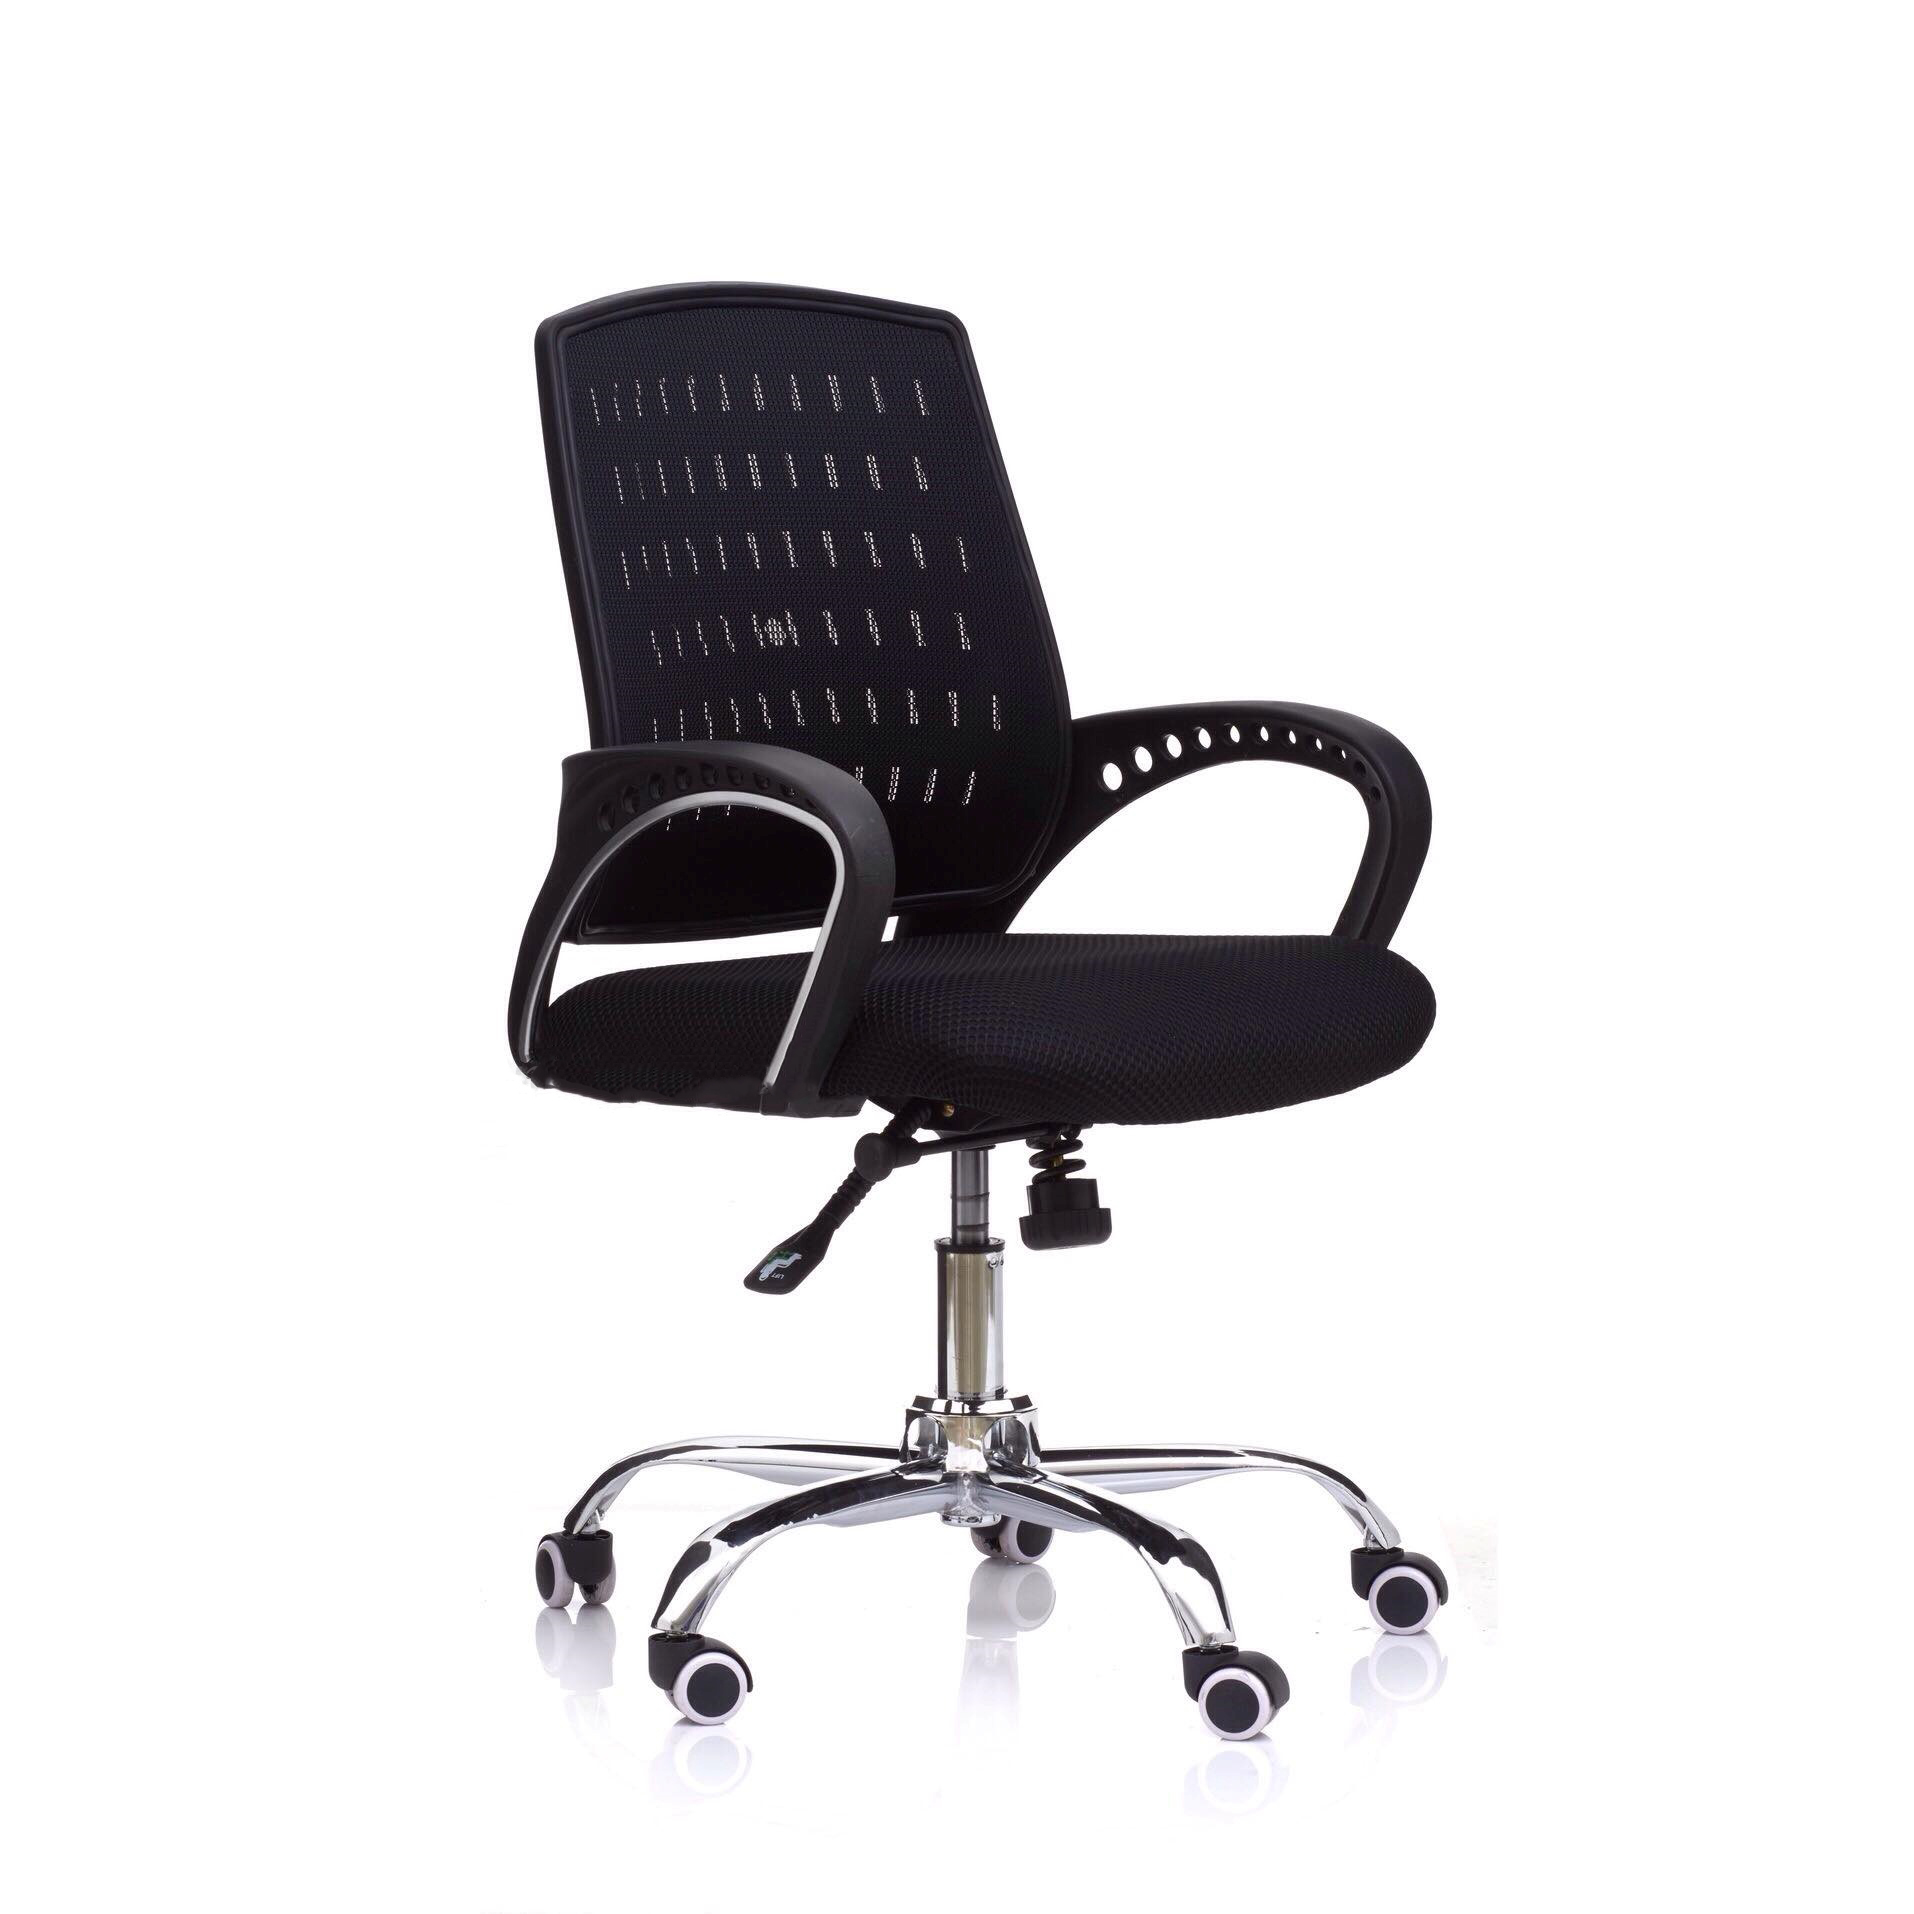 05330030::ON3::เก้าอี้สำนักงาน (ตาข่าย) ขาโครเมียม (หนาพิเศษ) ขนาด ก615xล555xส920-1040 มม. HOM เก้าอี้สำนักงาน